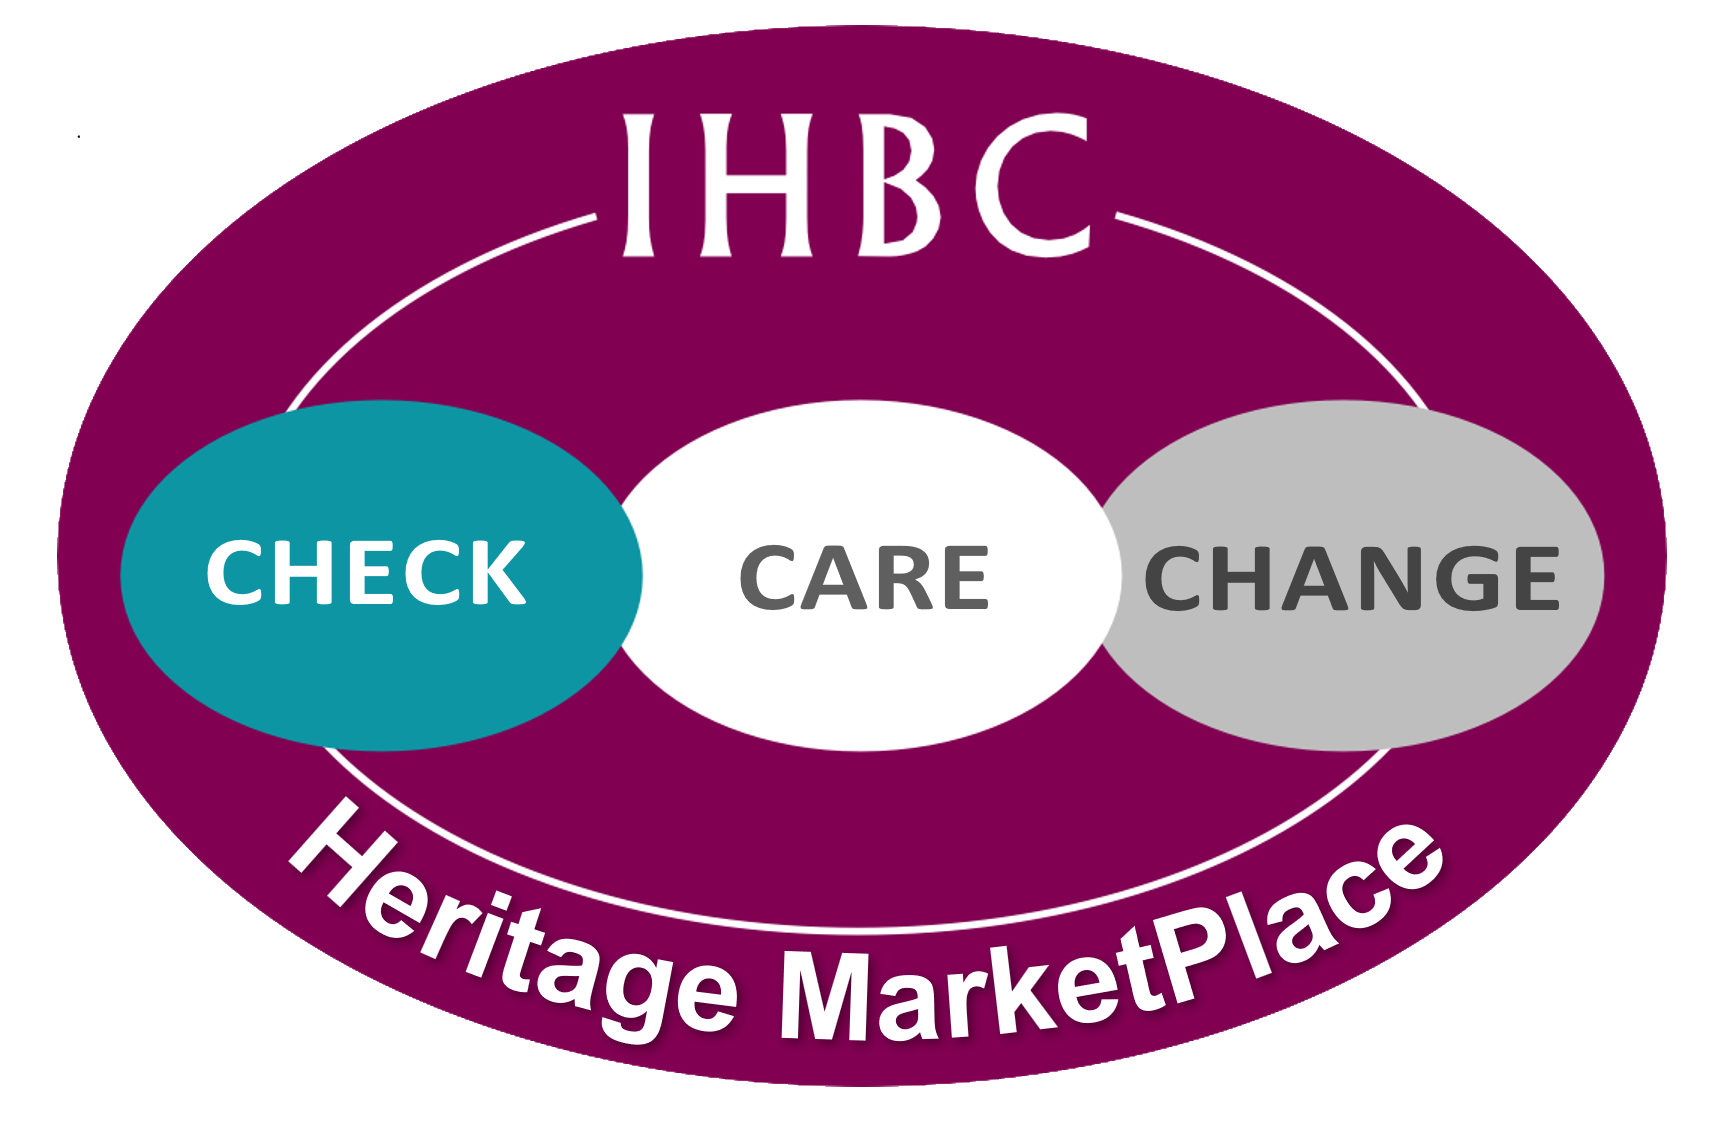 IHBC Heritage marketPlace logo